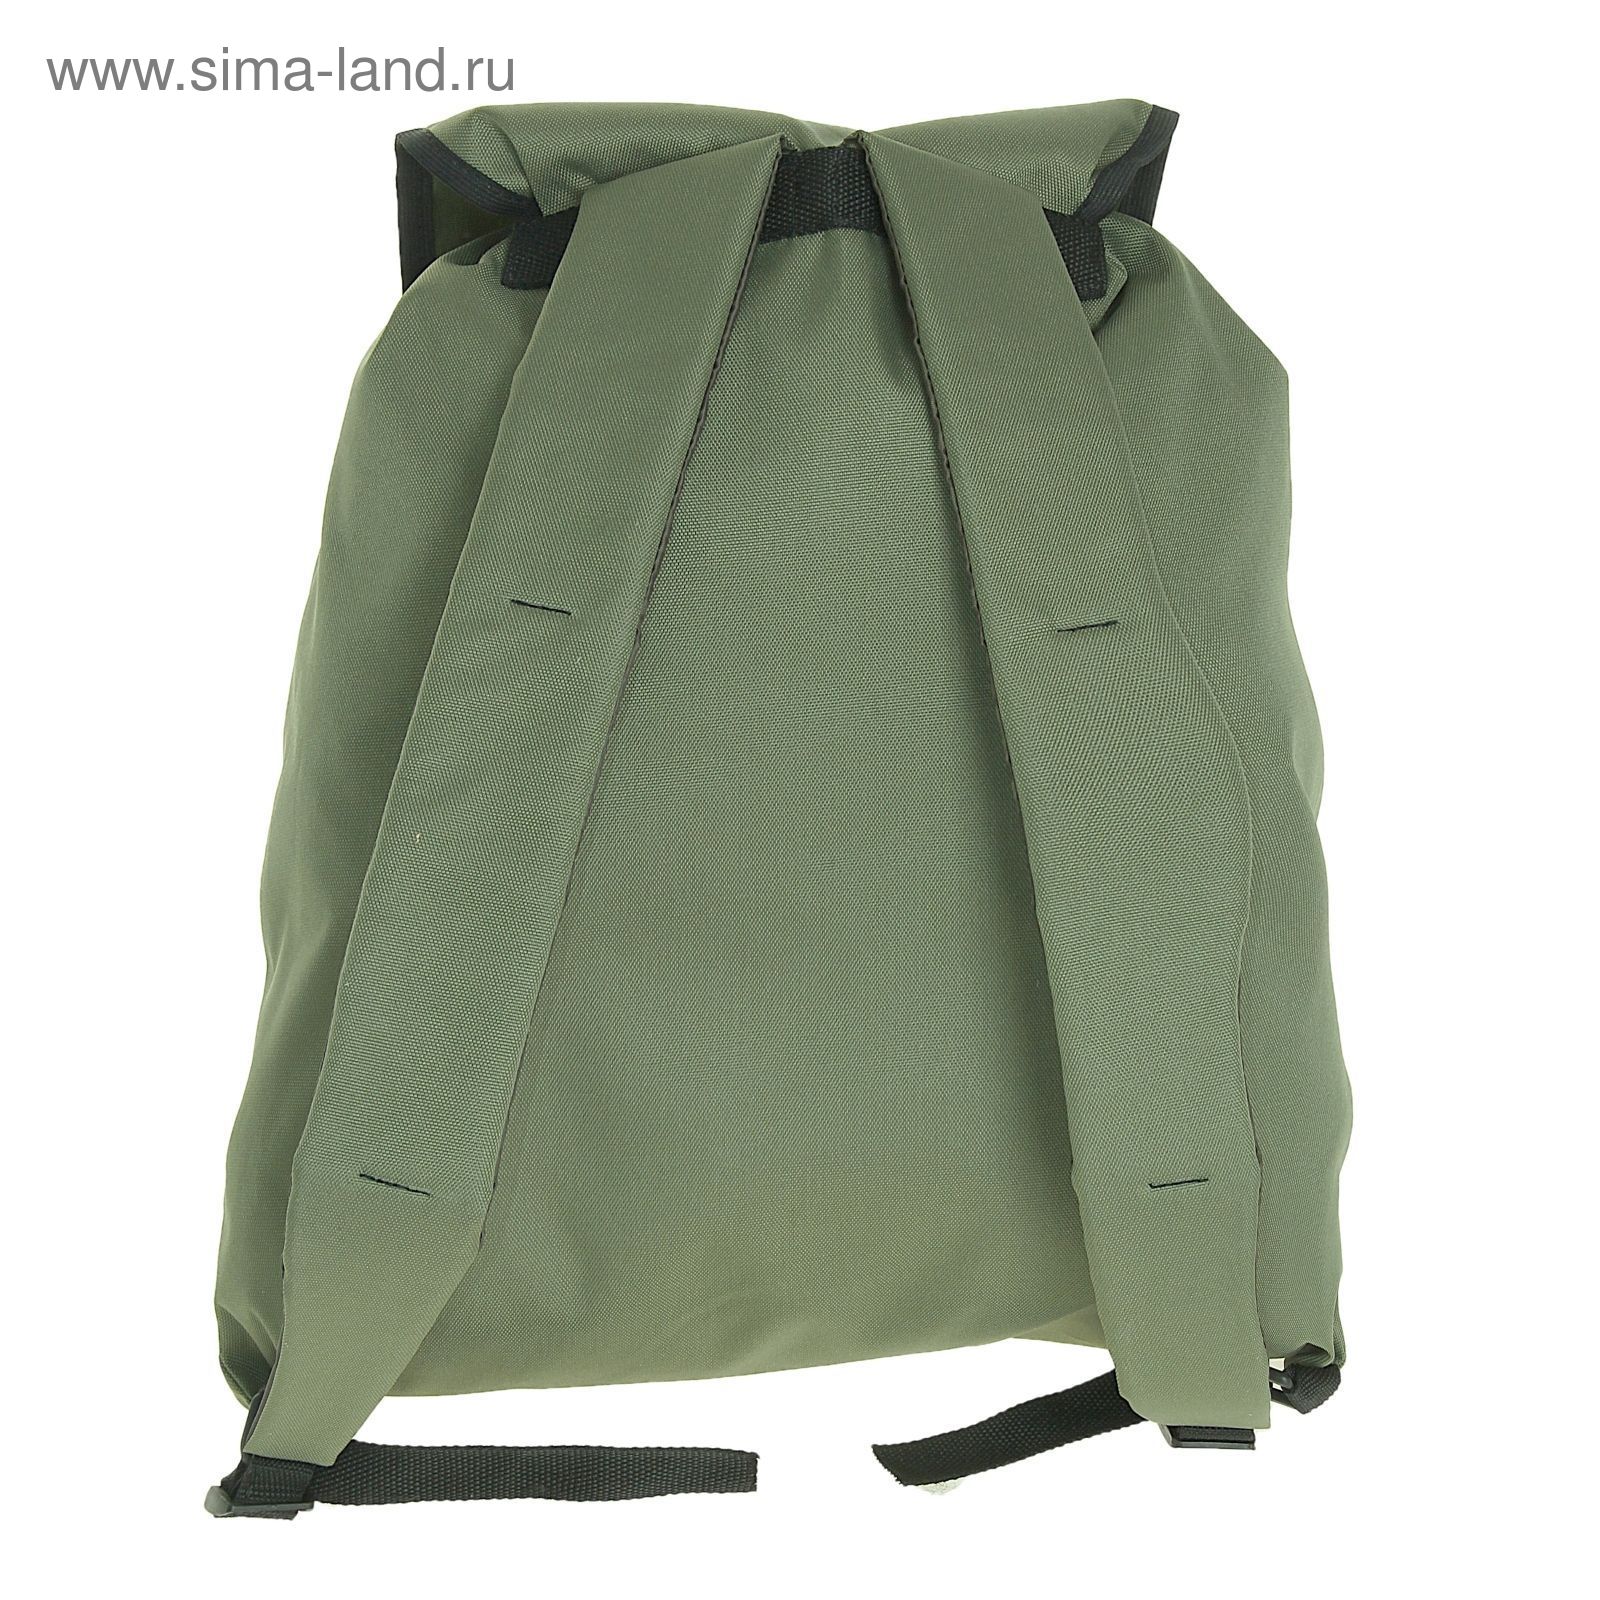 Рюкзак Тип-9, 35 л, цвета МИКС